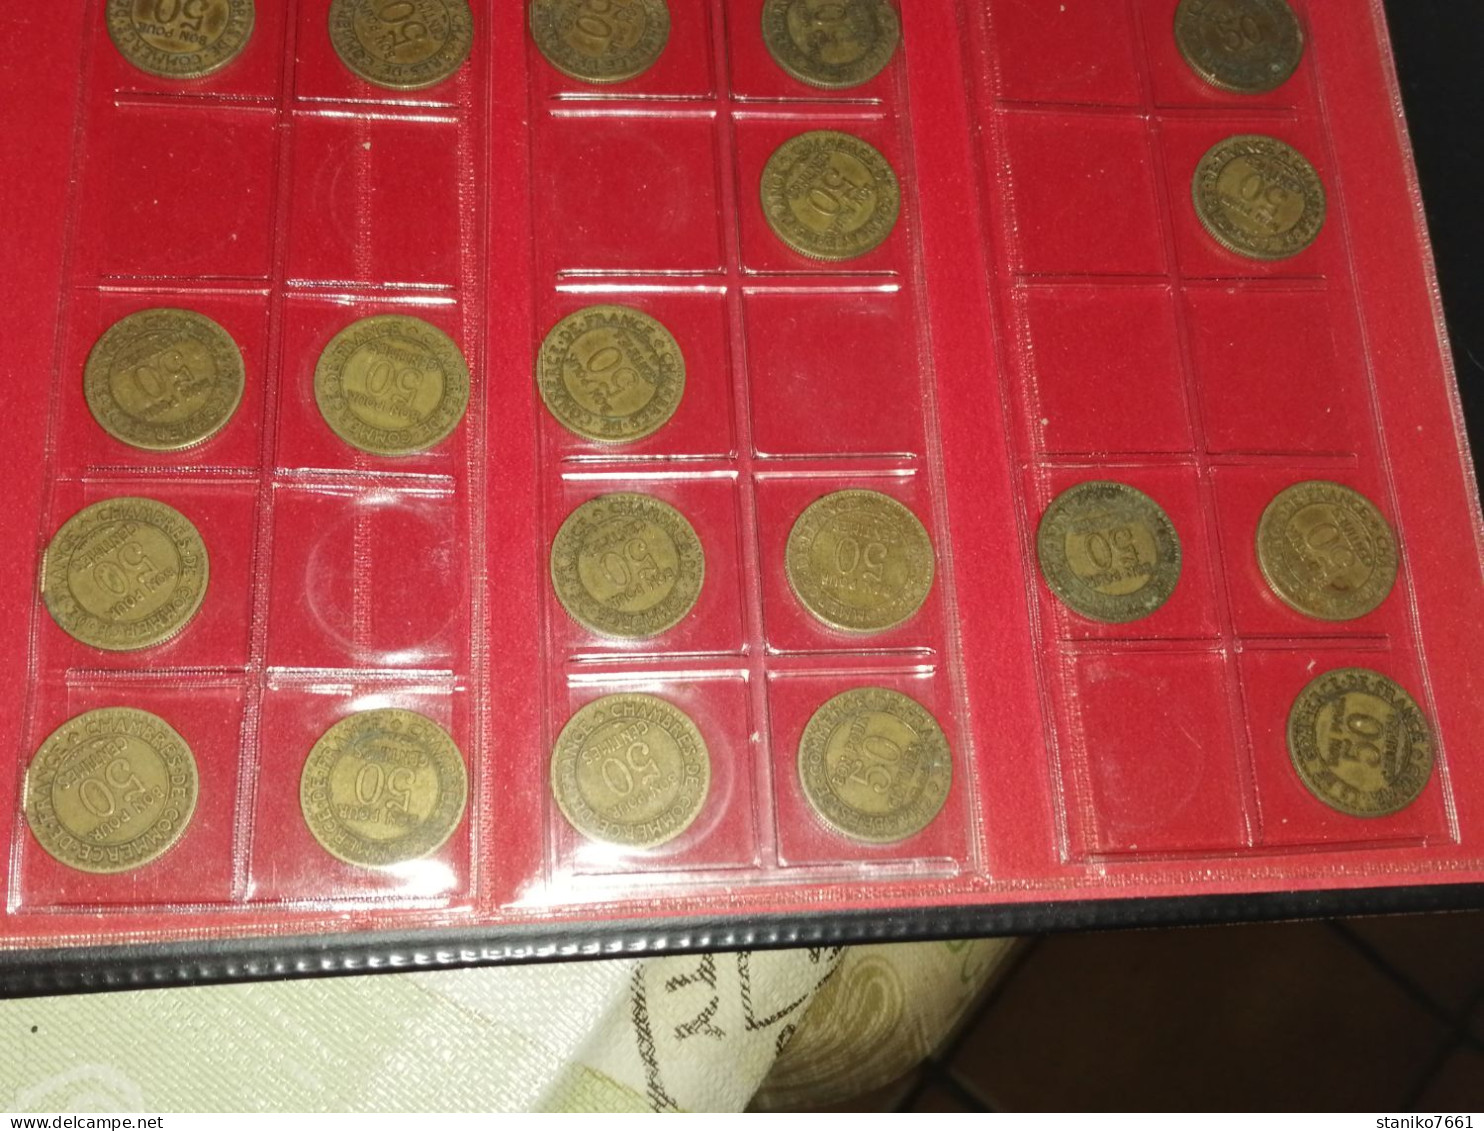 40 Monnaies Françaises 50 centimes chambre de commerce 1921 à 1929 état B à TTB voir photos